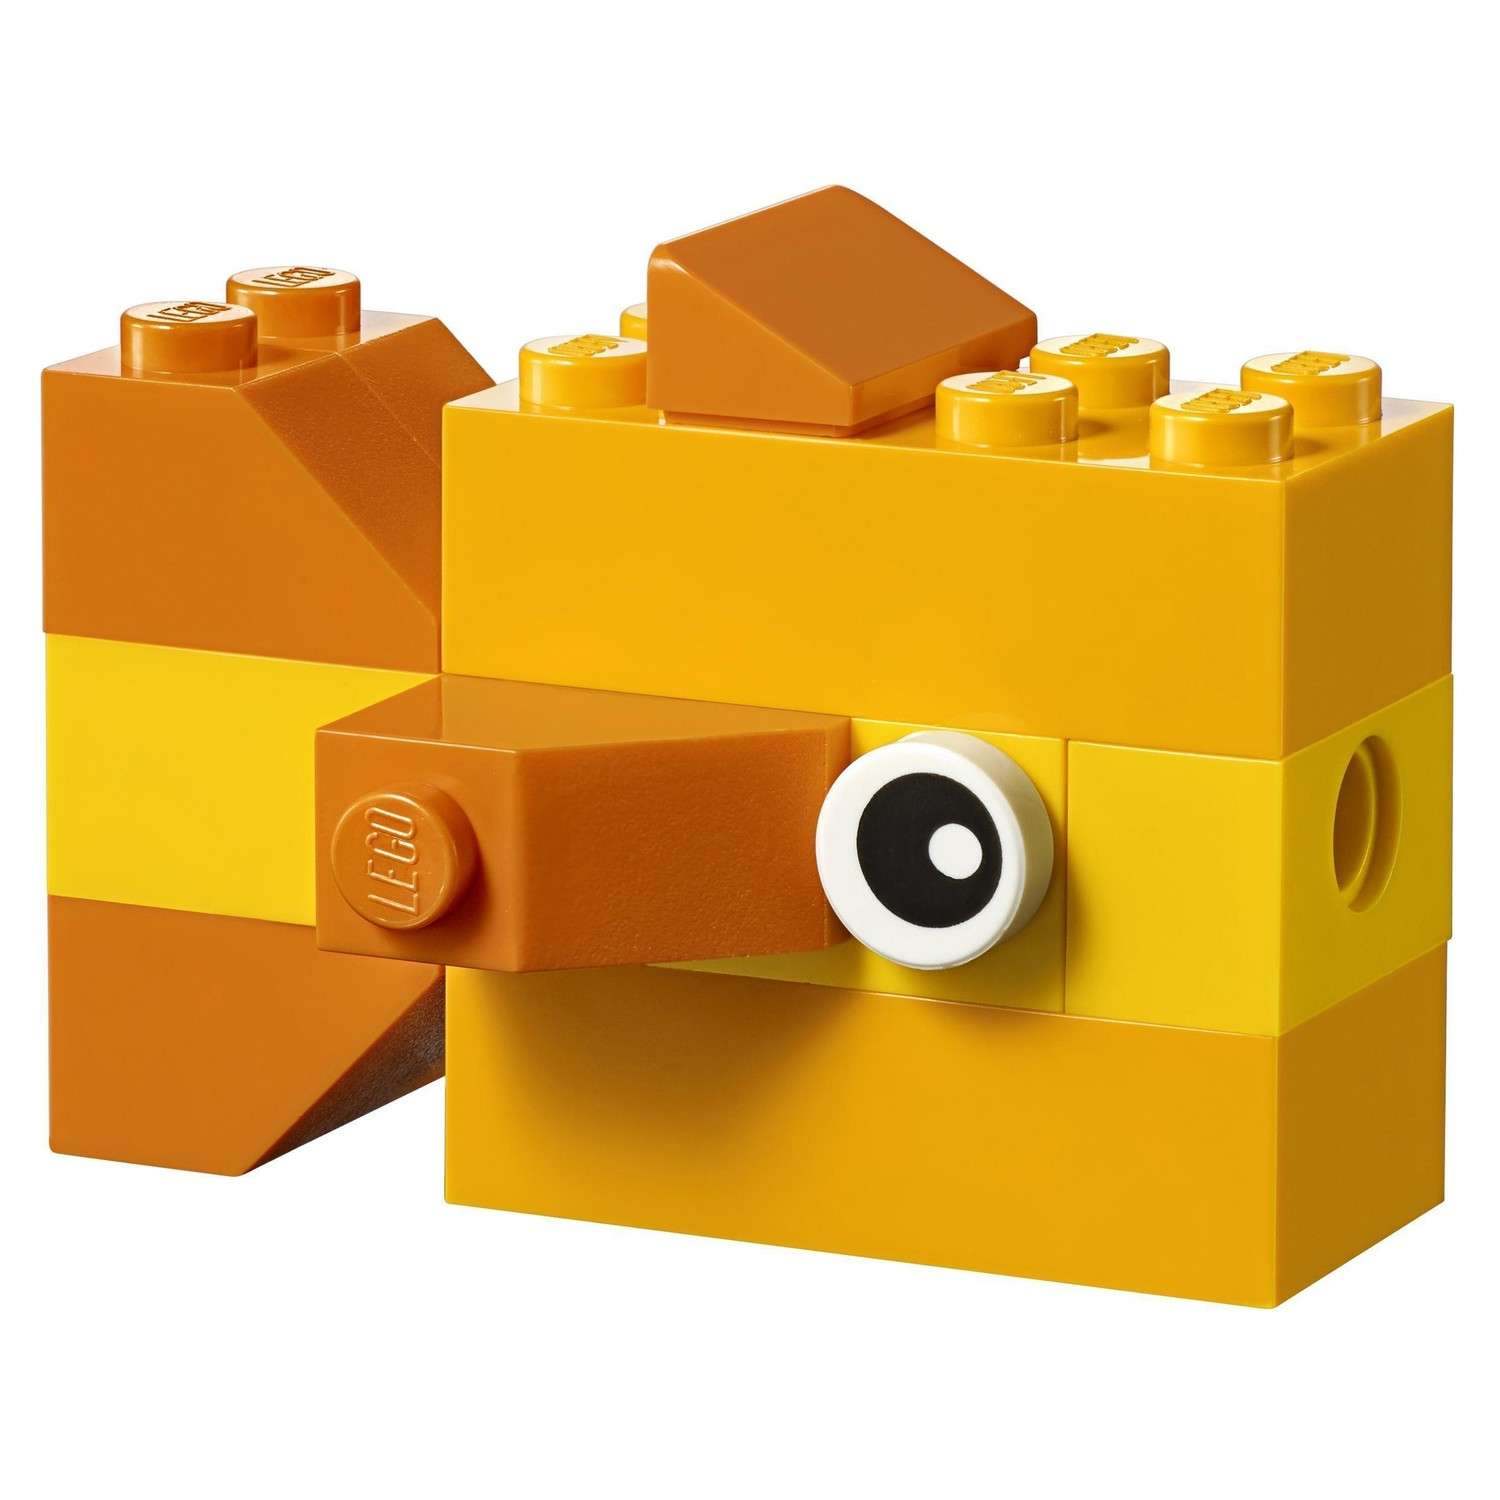 Конструктор LEGO Чемоданчик для творчества и конструирования Classic (10713) - фото 13